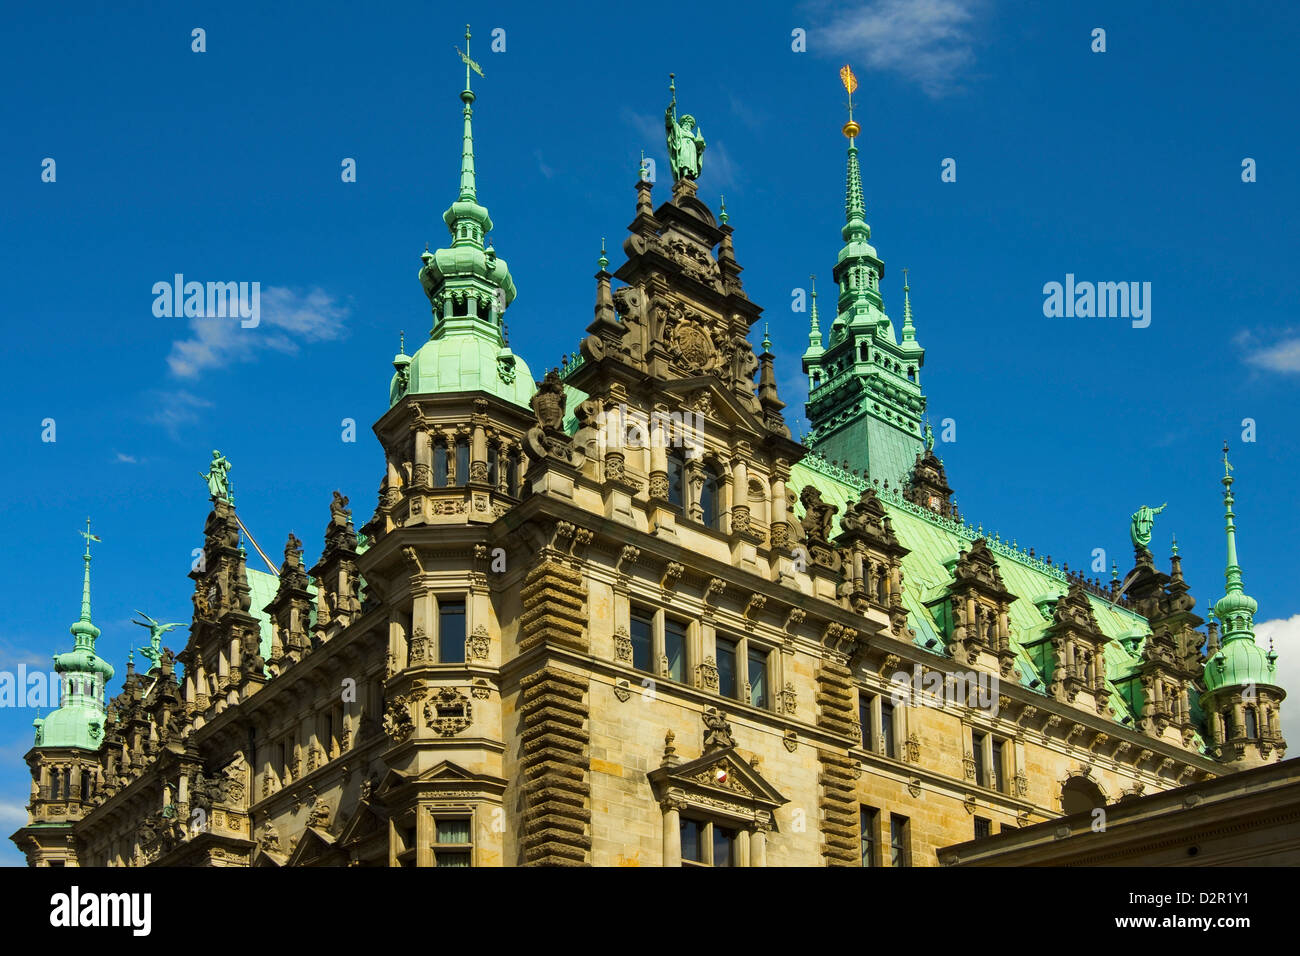 Ornamentada arquitectura neo-renacentista del Hamburgo Rathaus (Ayuntamiento), inaugurado el 1886, Hamburgo, Alemania, Europa Foto de stock